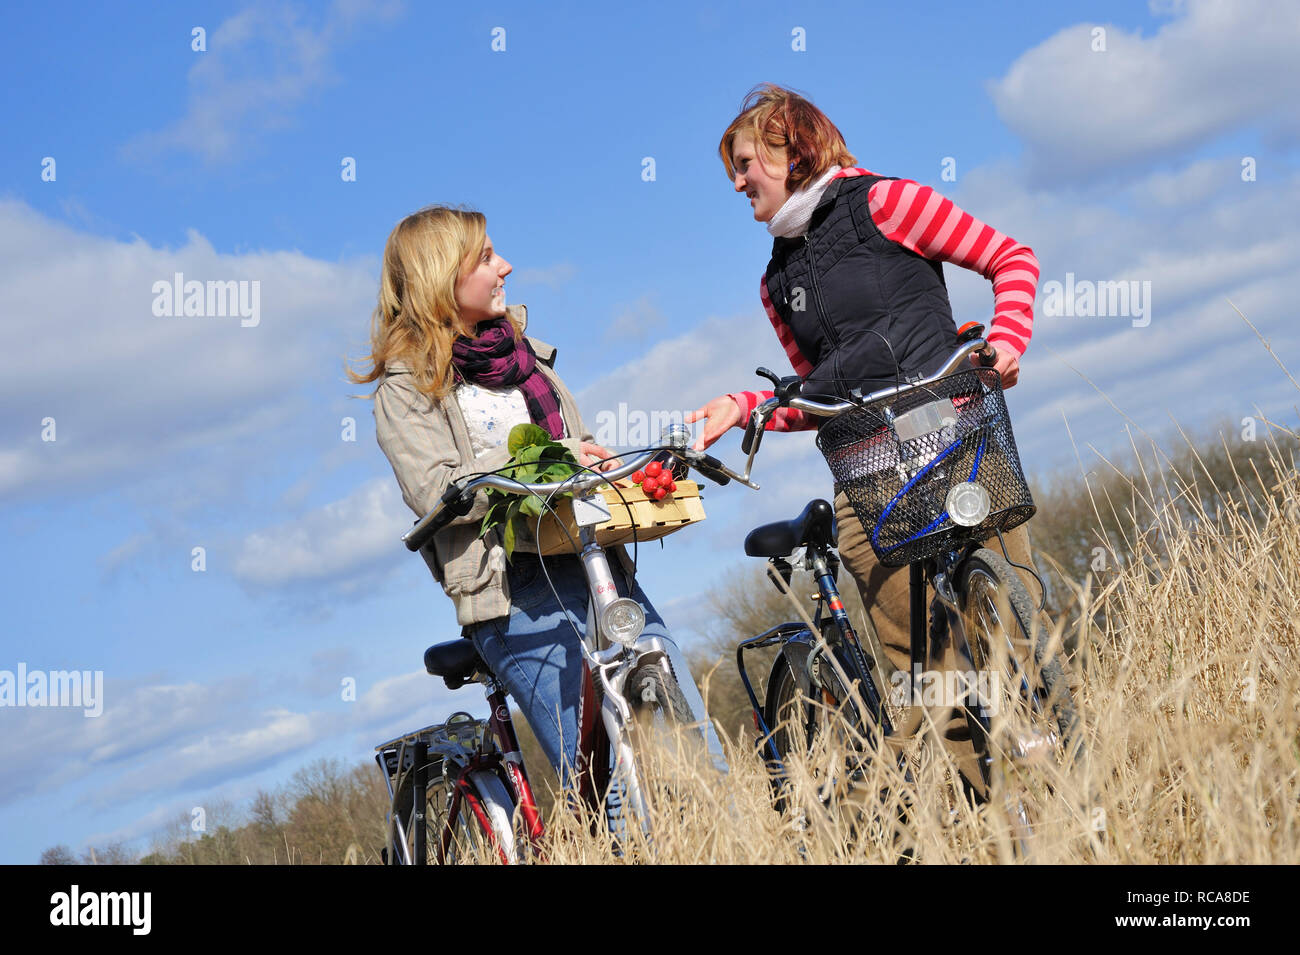 zwei jungendliche Frauen mit Fahrrad und Gemüsekorb - junges Gemüse | two young women with their bicycle and a vegetable basket Stock Photo